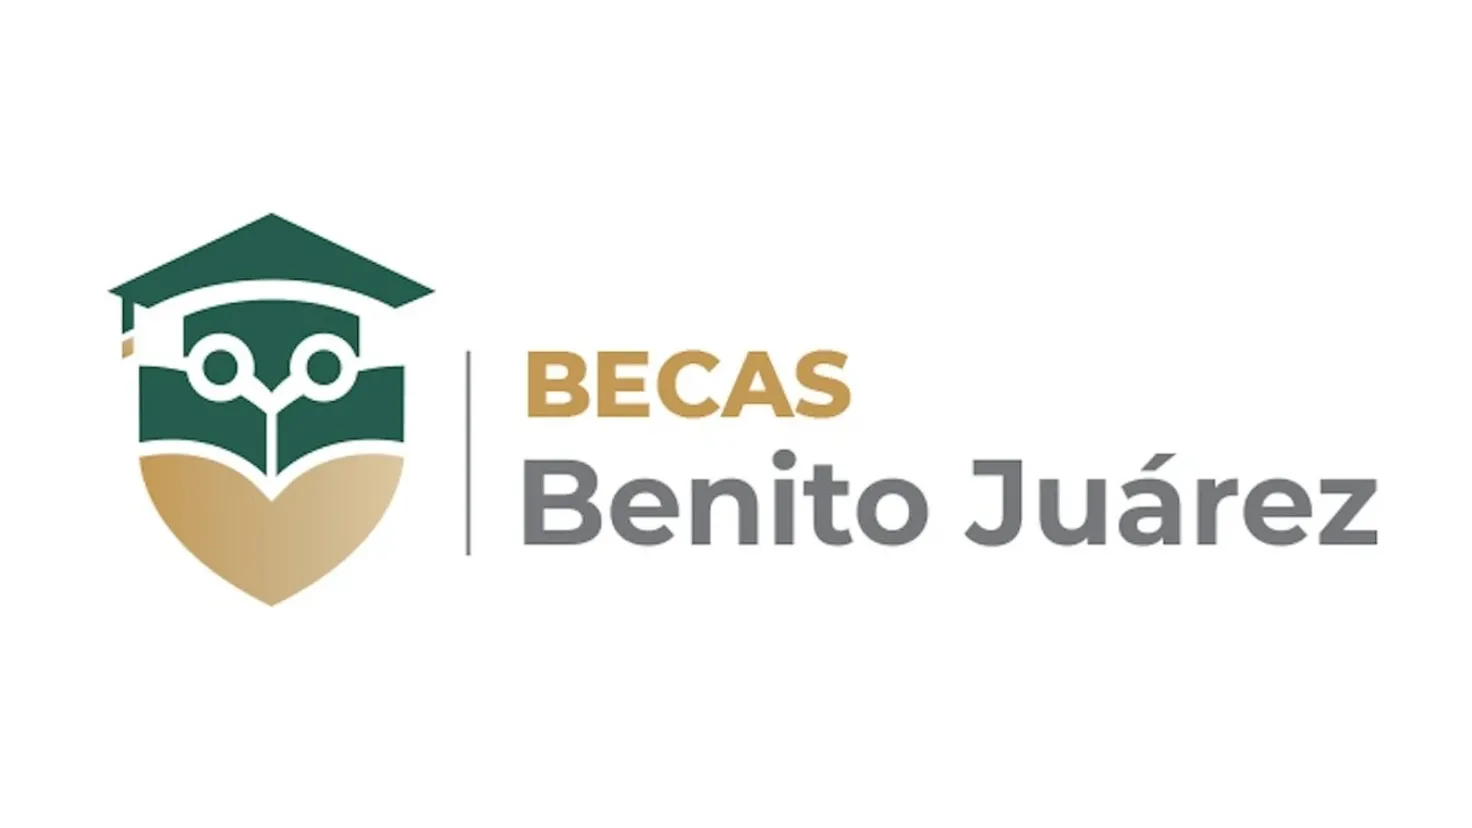 ¿Cuánto tiempo de apoyo se tiene para la Beca Benito Juárez?